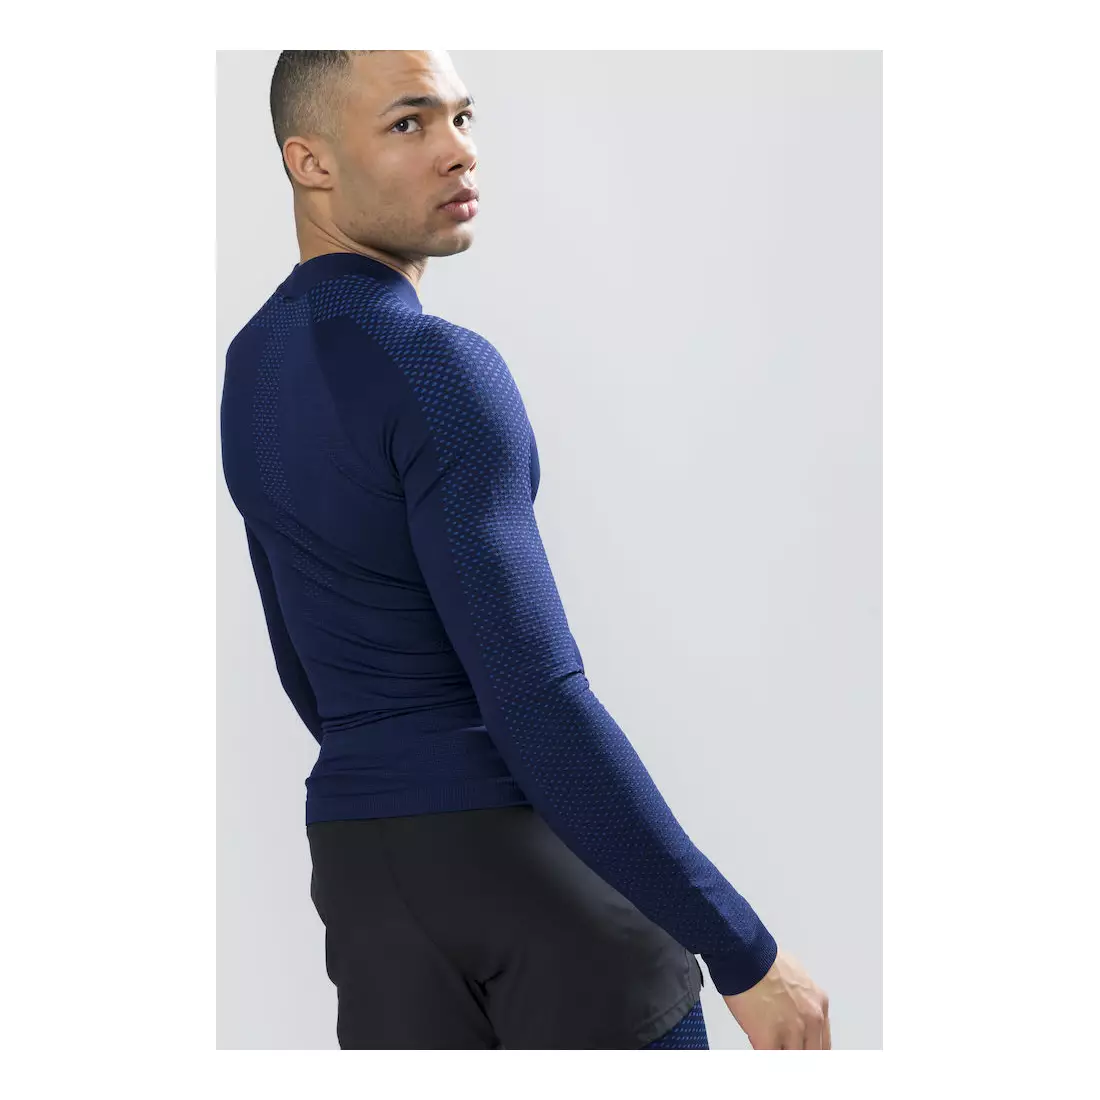 CRAFT WARM INTENSITY underwear men's T-shirt, navy blue 1905350-391000